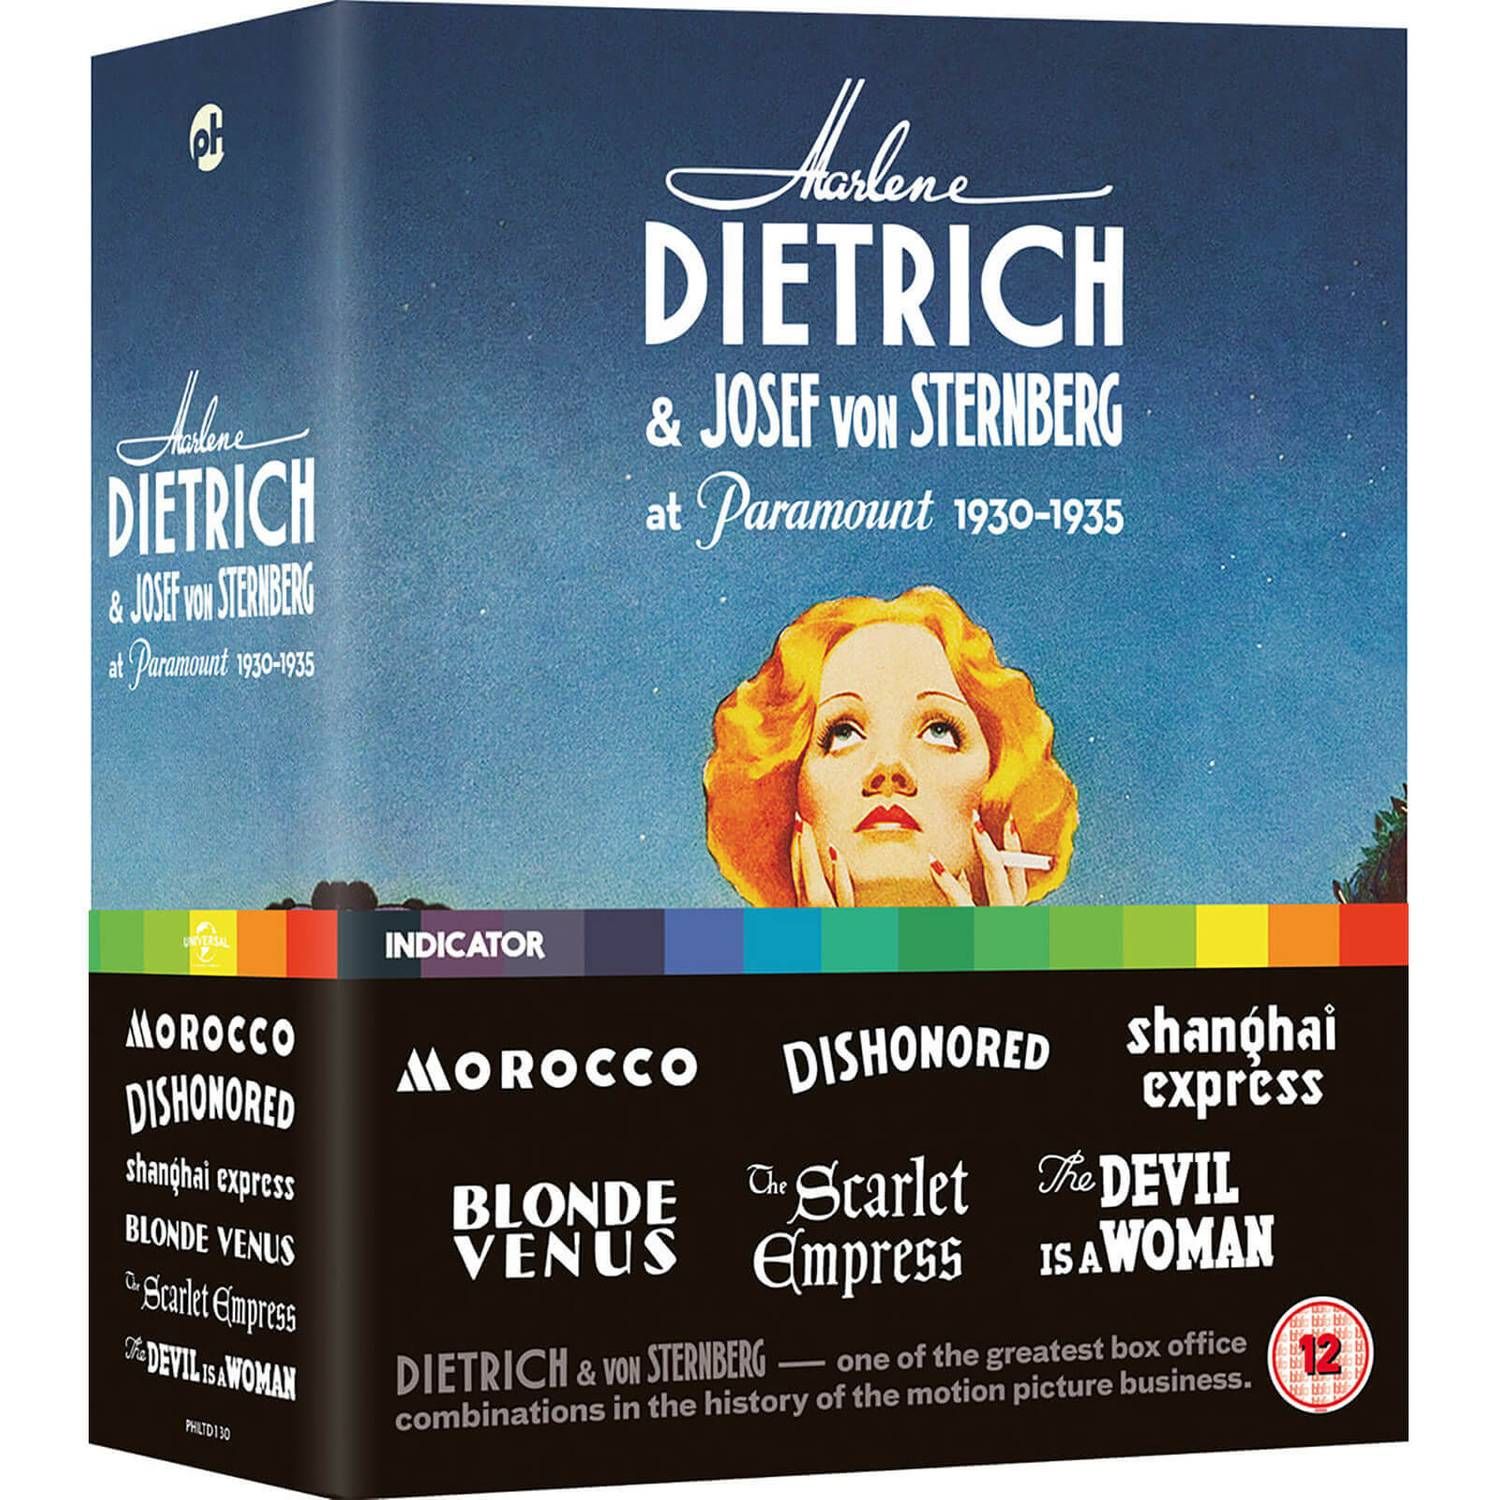 Marlene-Dietrich-Josef-von-Sternberg-at-Paramount-Blu-Ray-cover